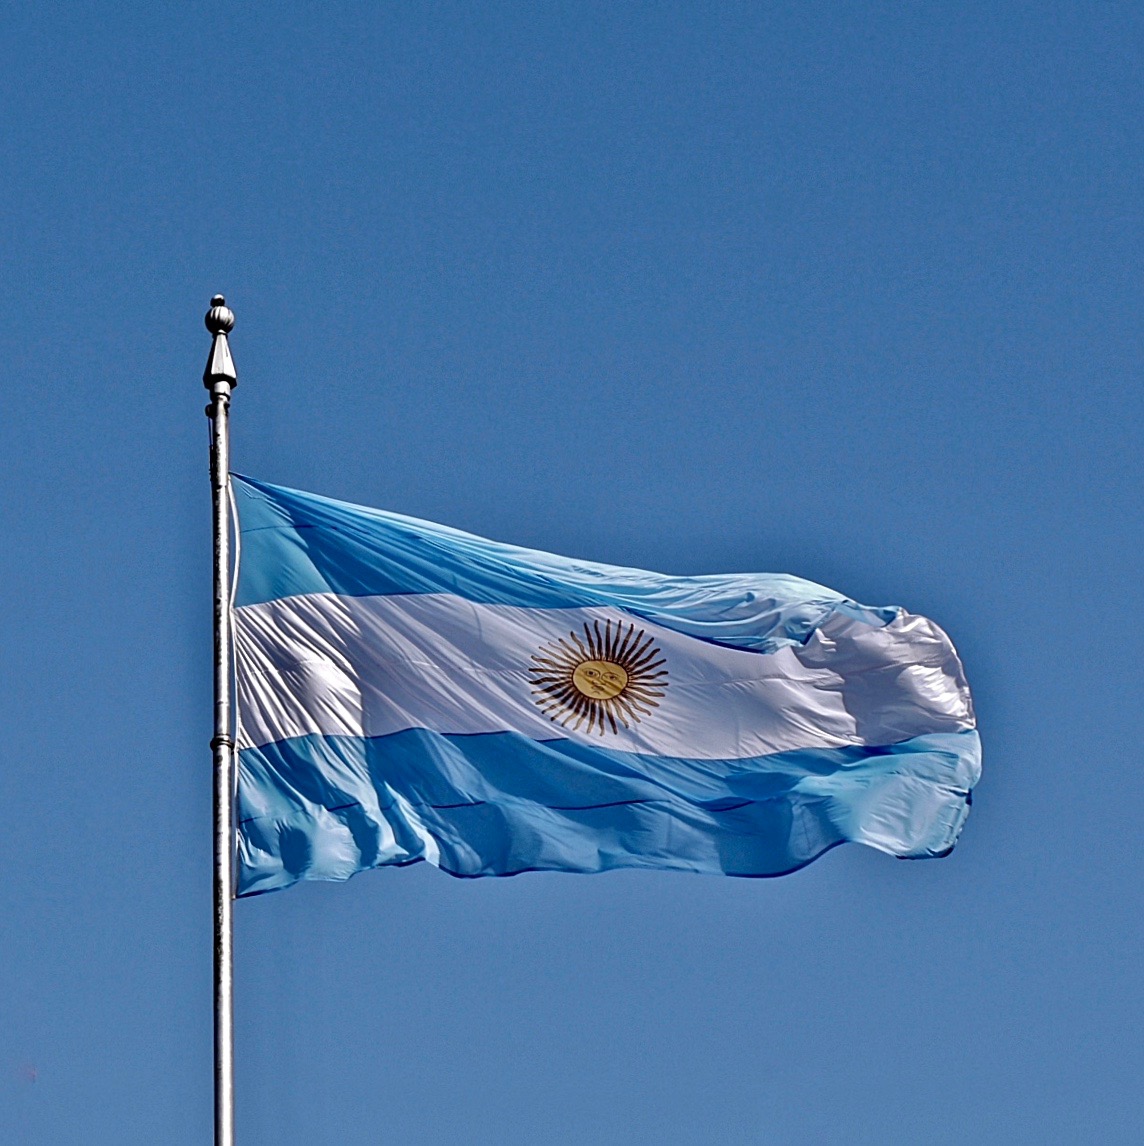 Felicidades y feliz navidad, Argentina!